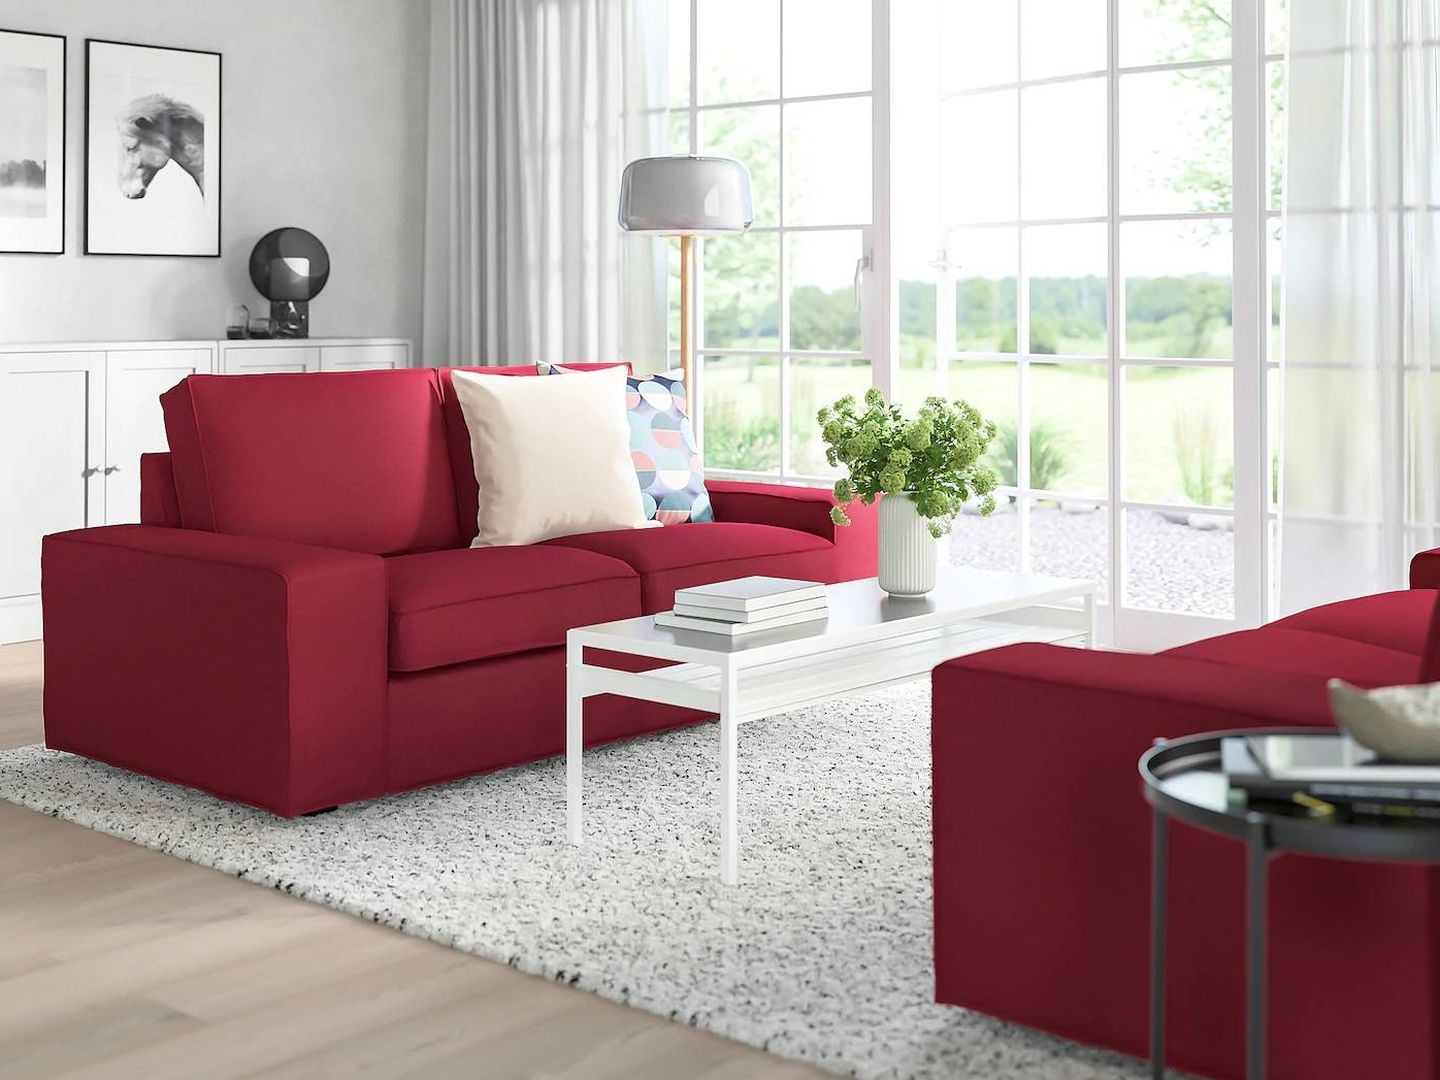 Sofás baratos de Ikea para salones pequeños. (Cortesía)